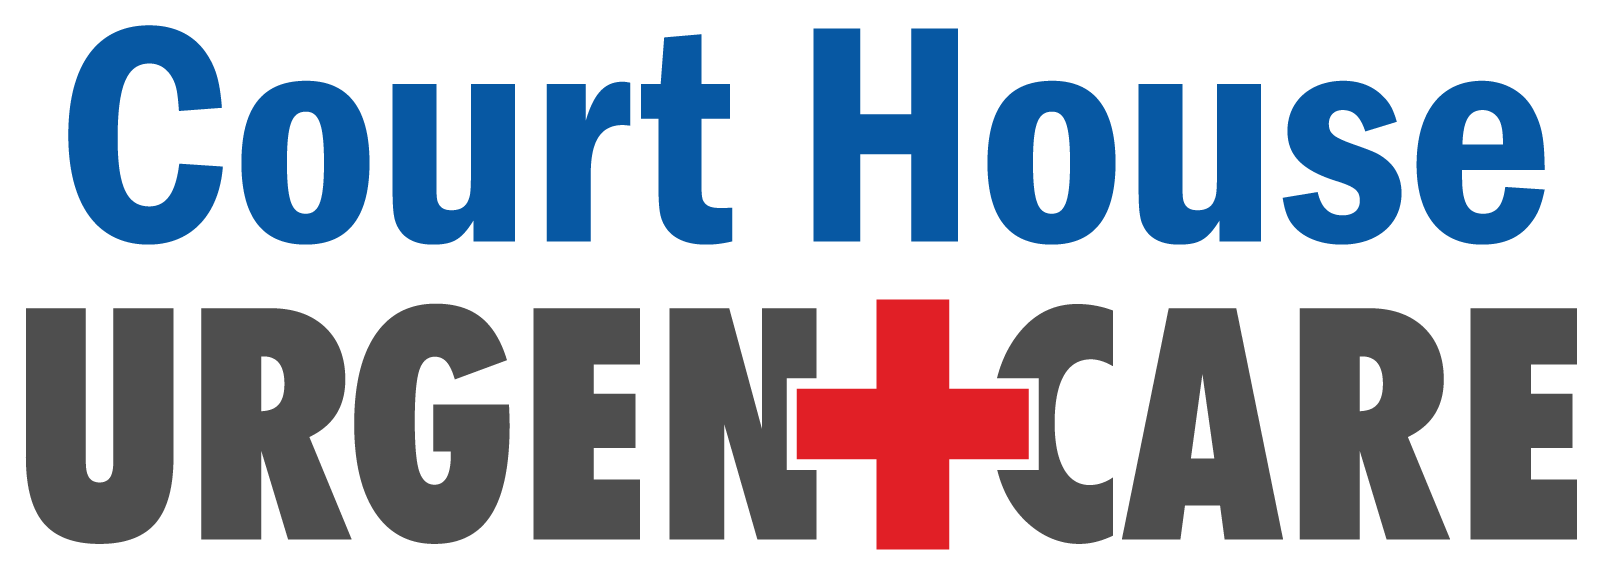 Courthouse Urgent Care logo.